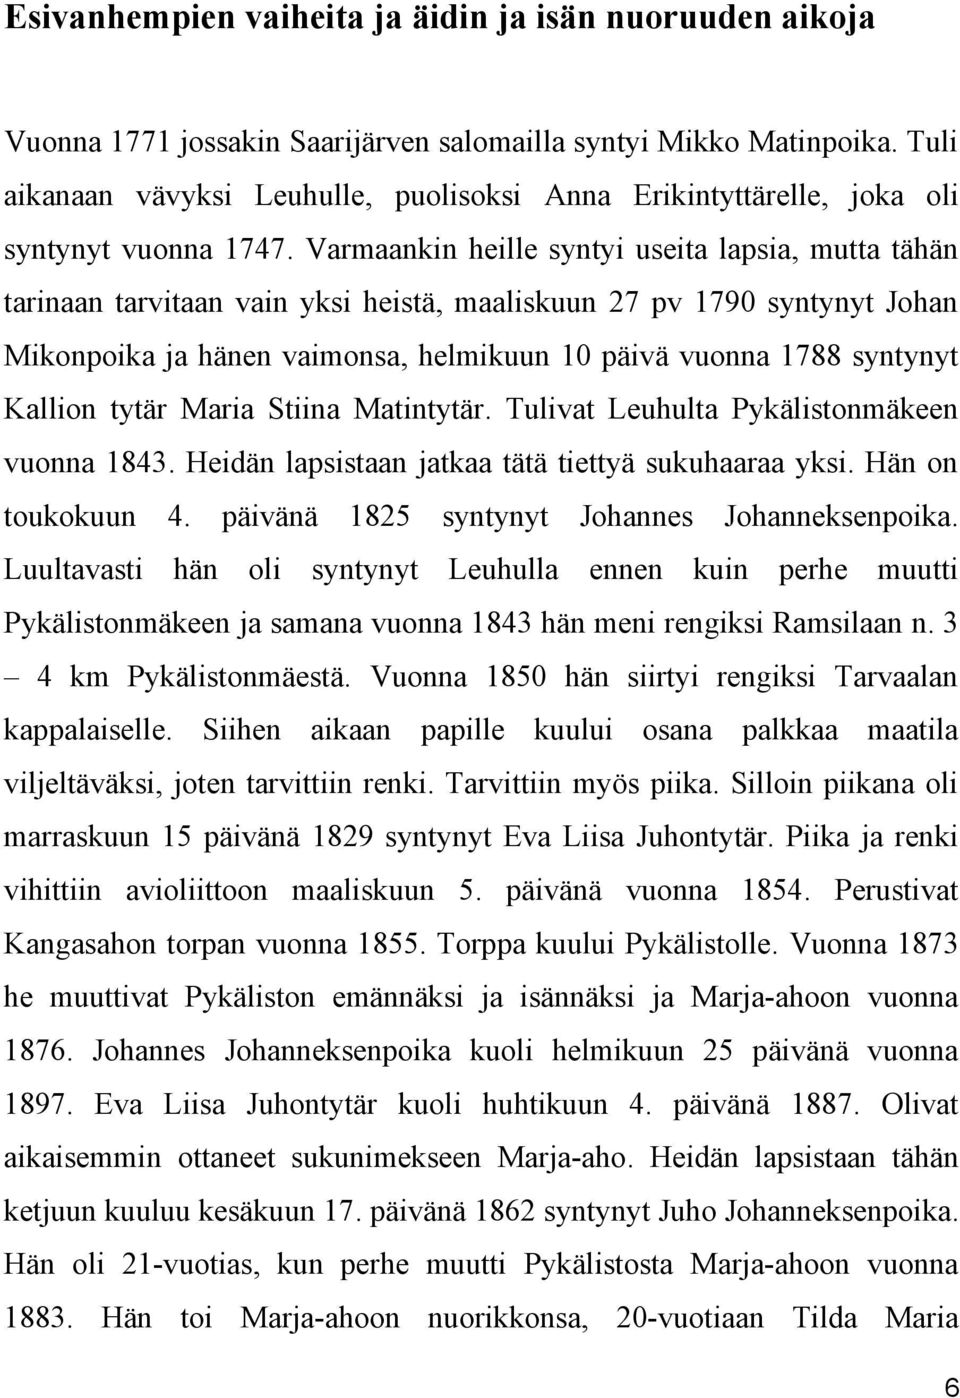 Varmaankin heille syntyi useita lapsia, mutta tähän tarinaan tarvitaan vain yksi heistä, maaliskuun 27 pv 1790 syntynyt Johan Mikonpoika ja hänen vaimonsa, helmikuun 10 päivä vuonna 1788 syntynyt